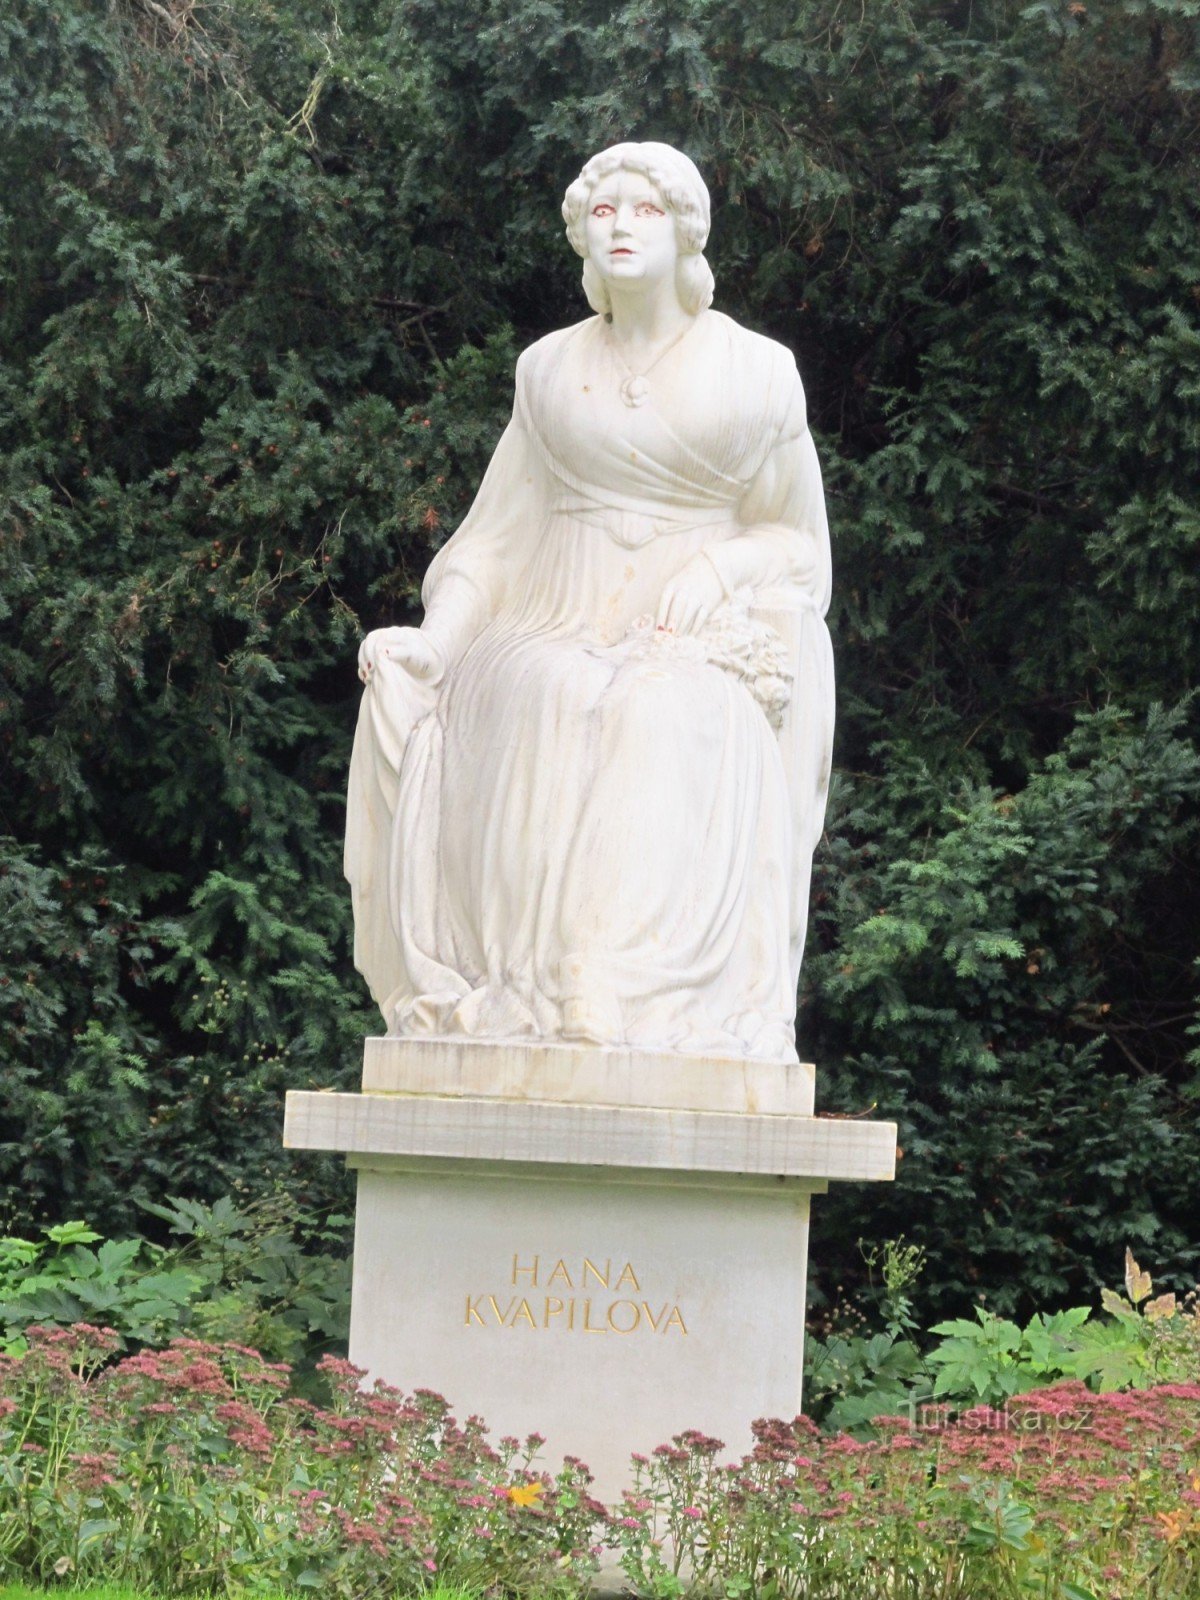 Monumento de Hana Kvapilová no jardim Kinsky em Praga